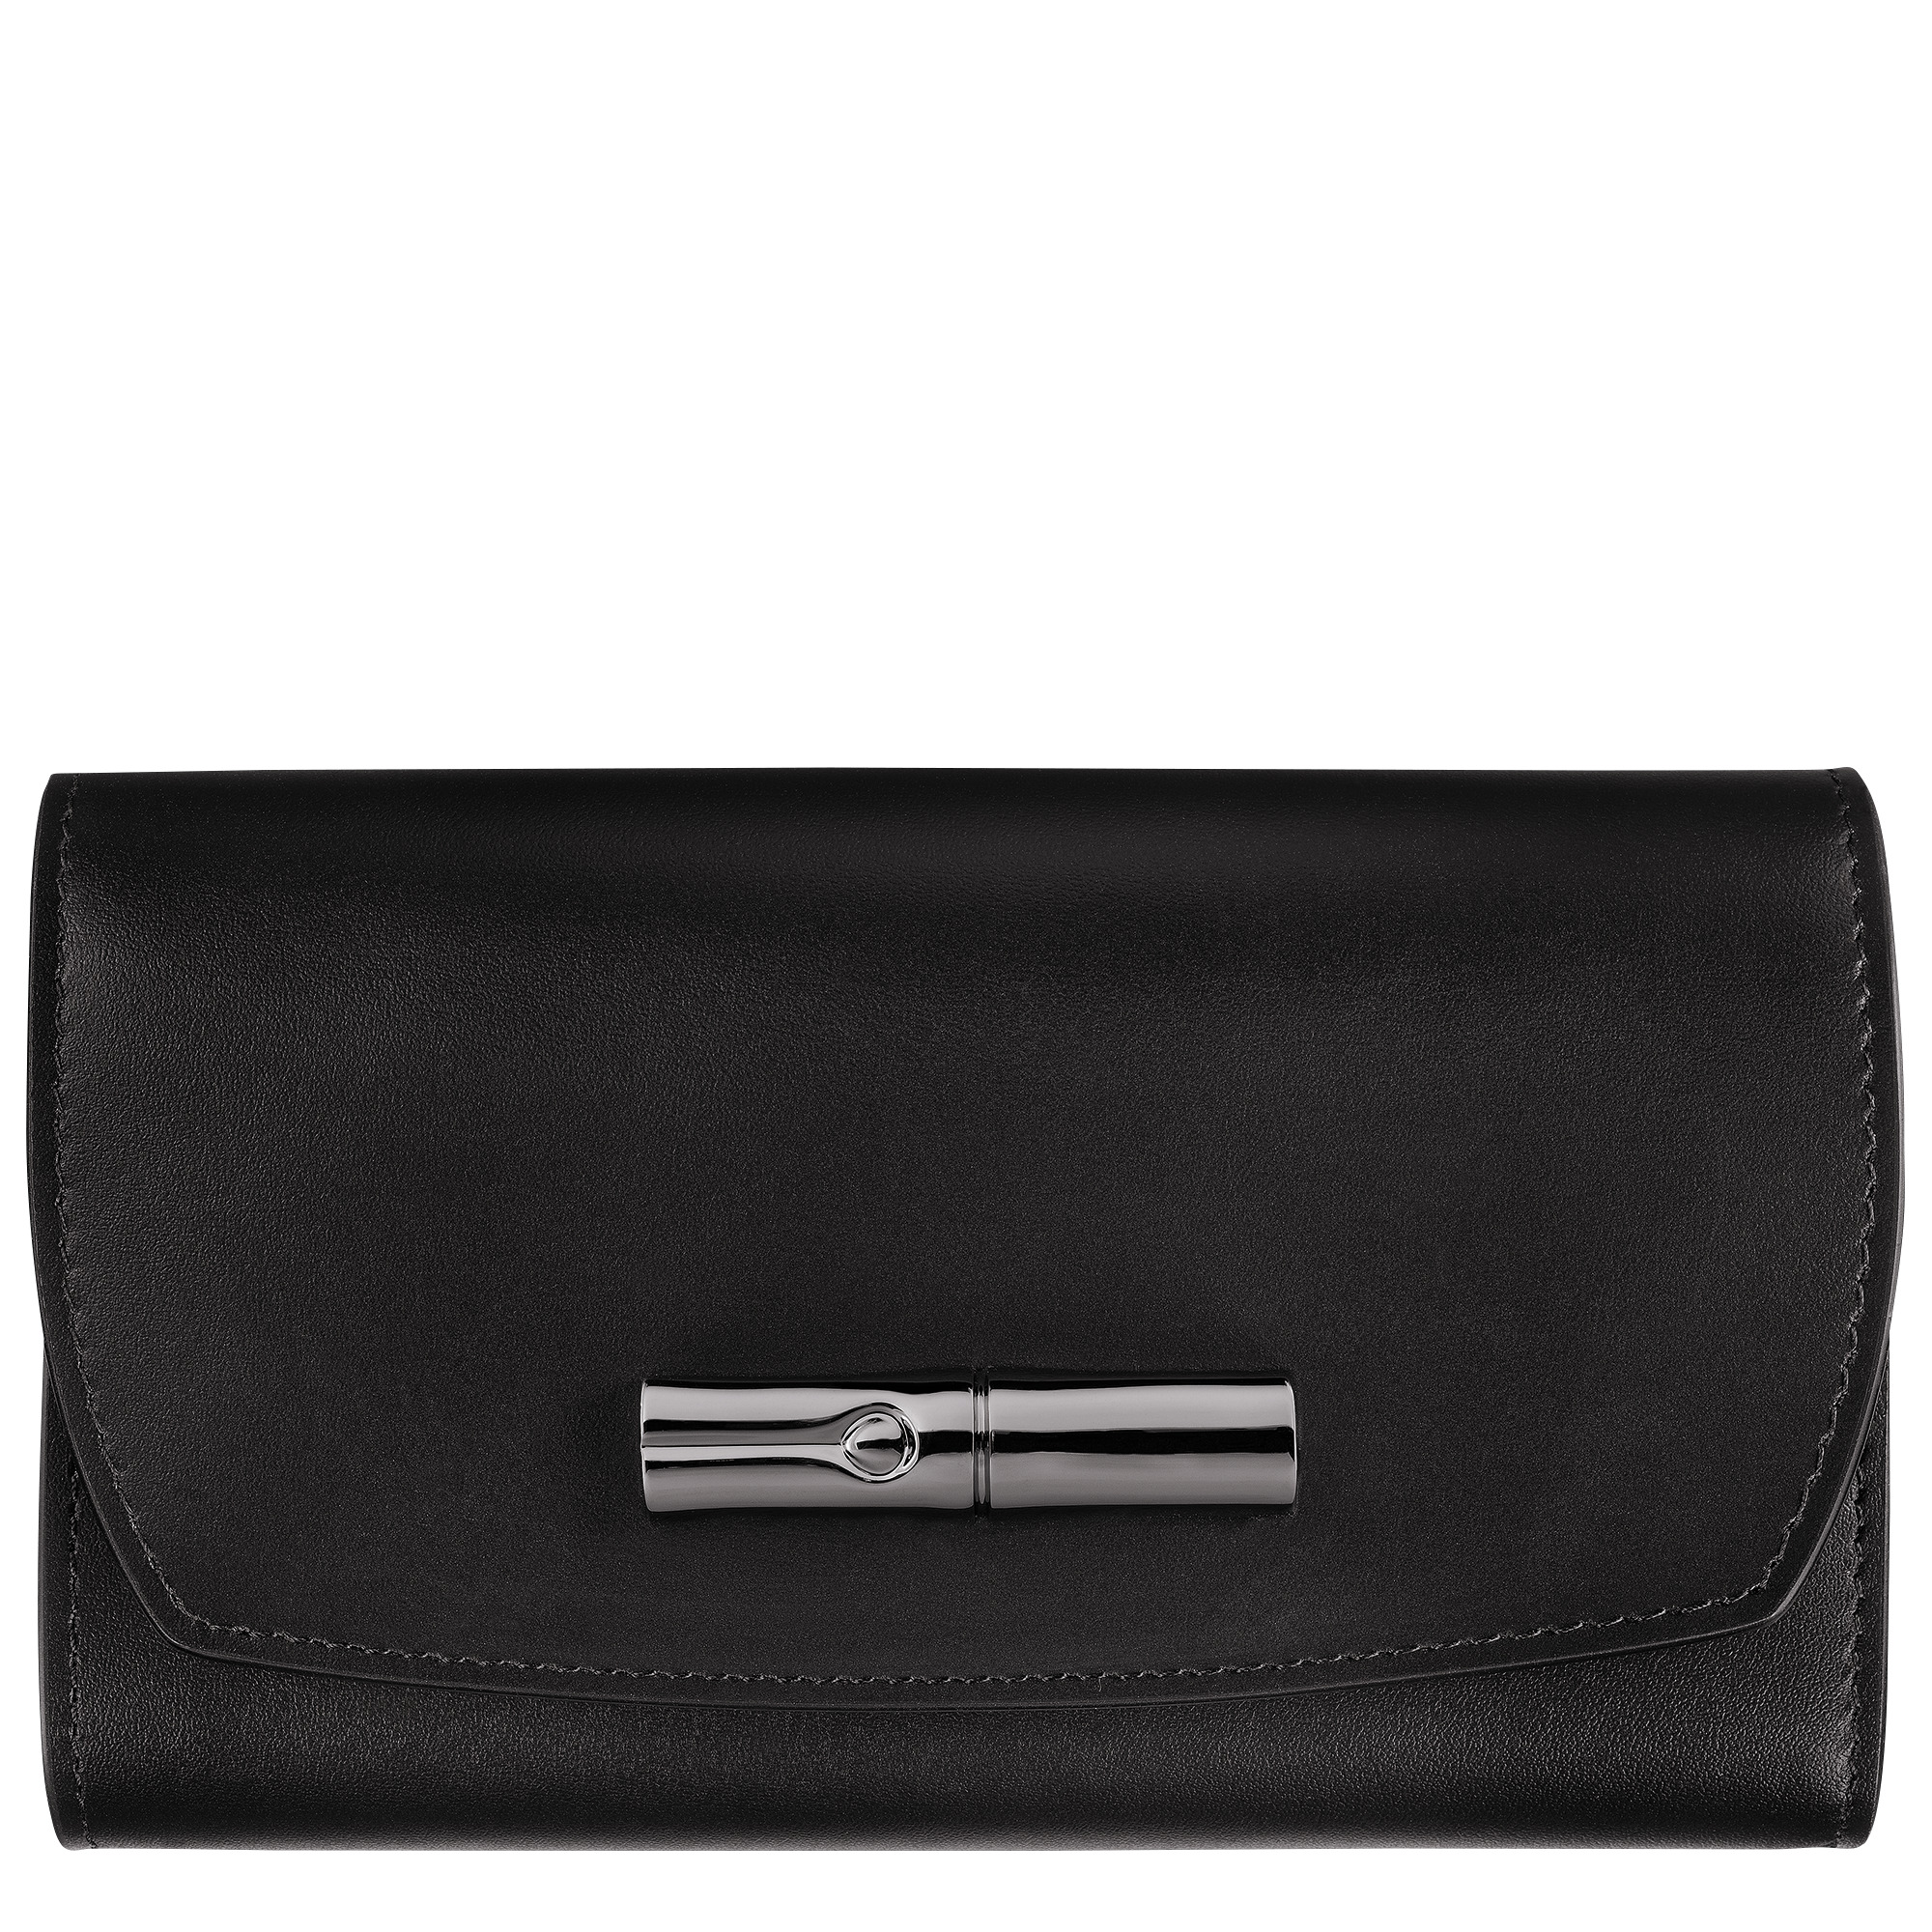 Roseau Wallet Black - Leather - 1